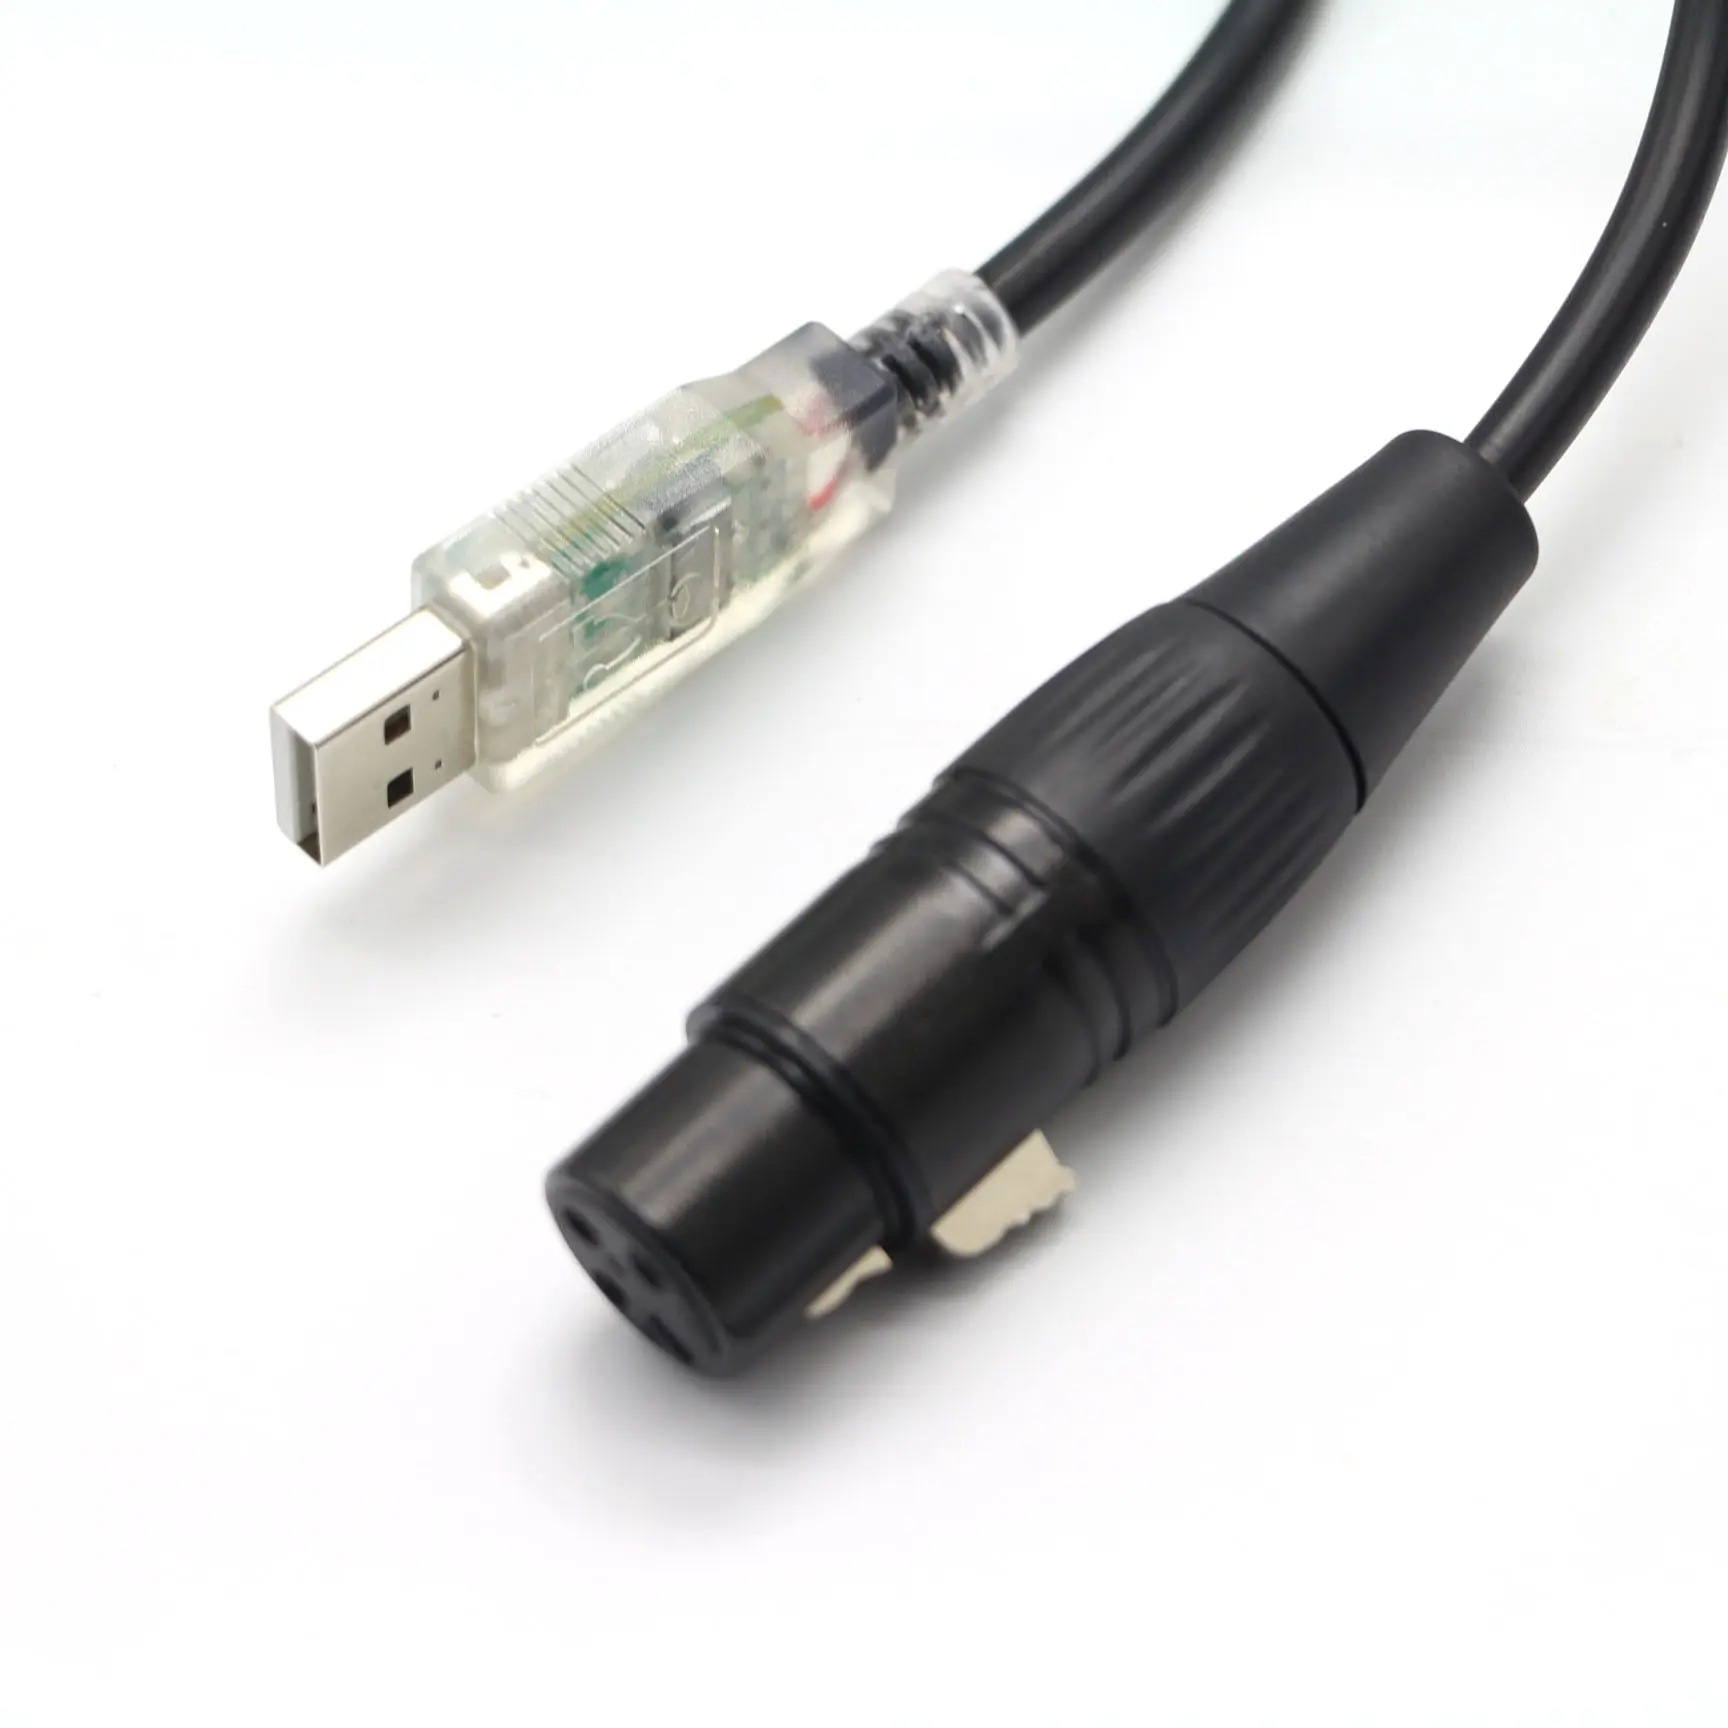 Cable de micrófono USB, convertidor XLR hembra a USB, para micrófonos o grabación de Karaoke, 10 pies (USB a XLR)